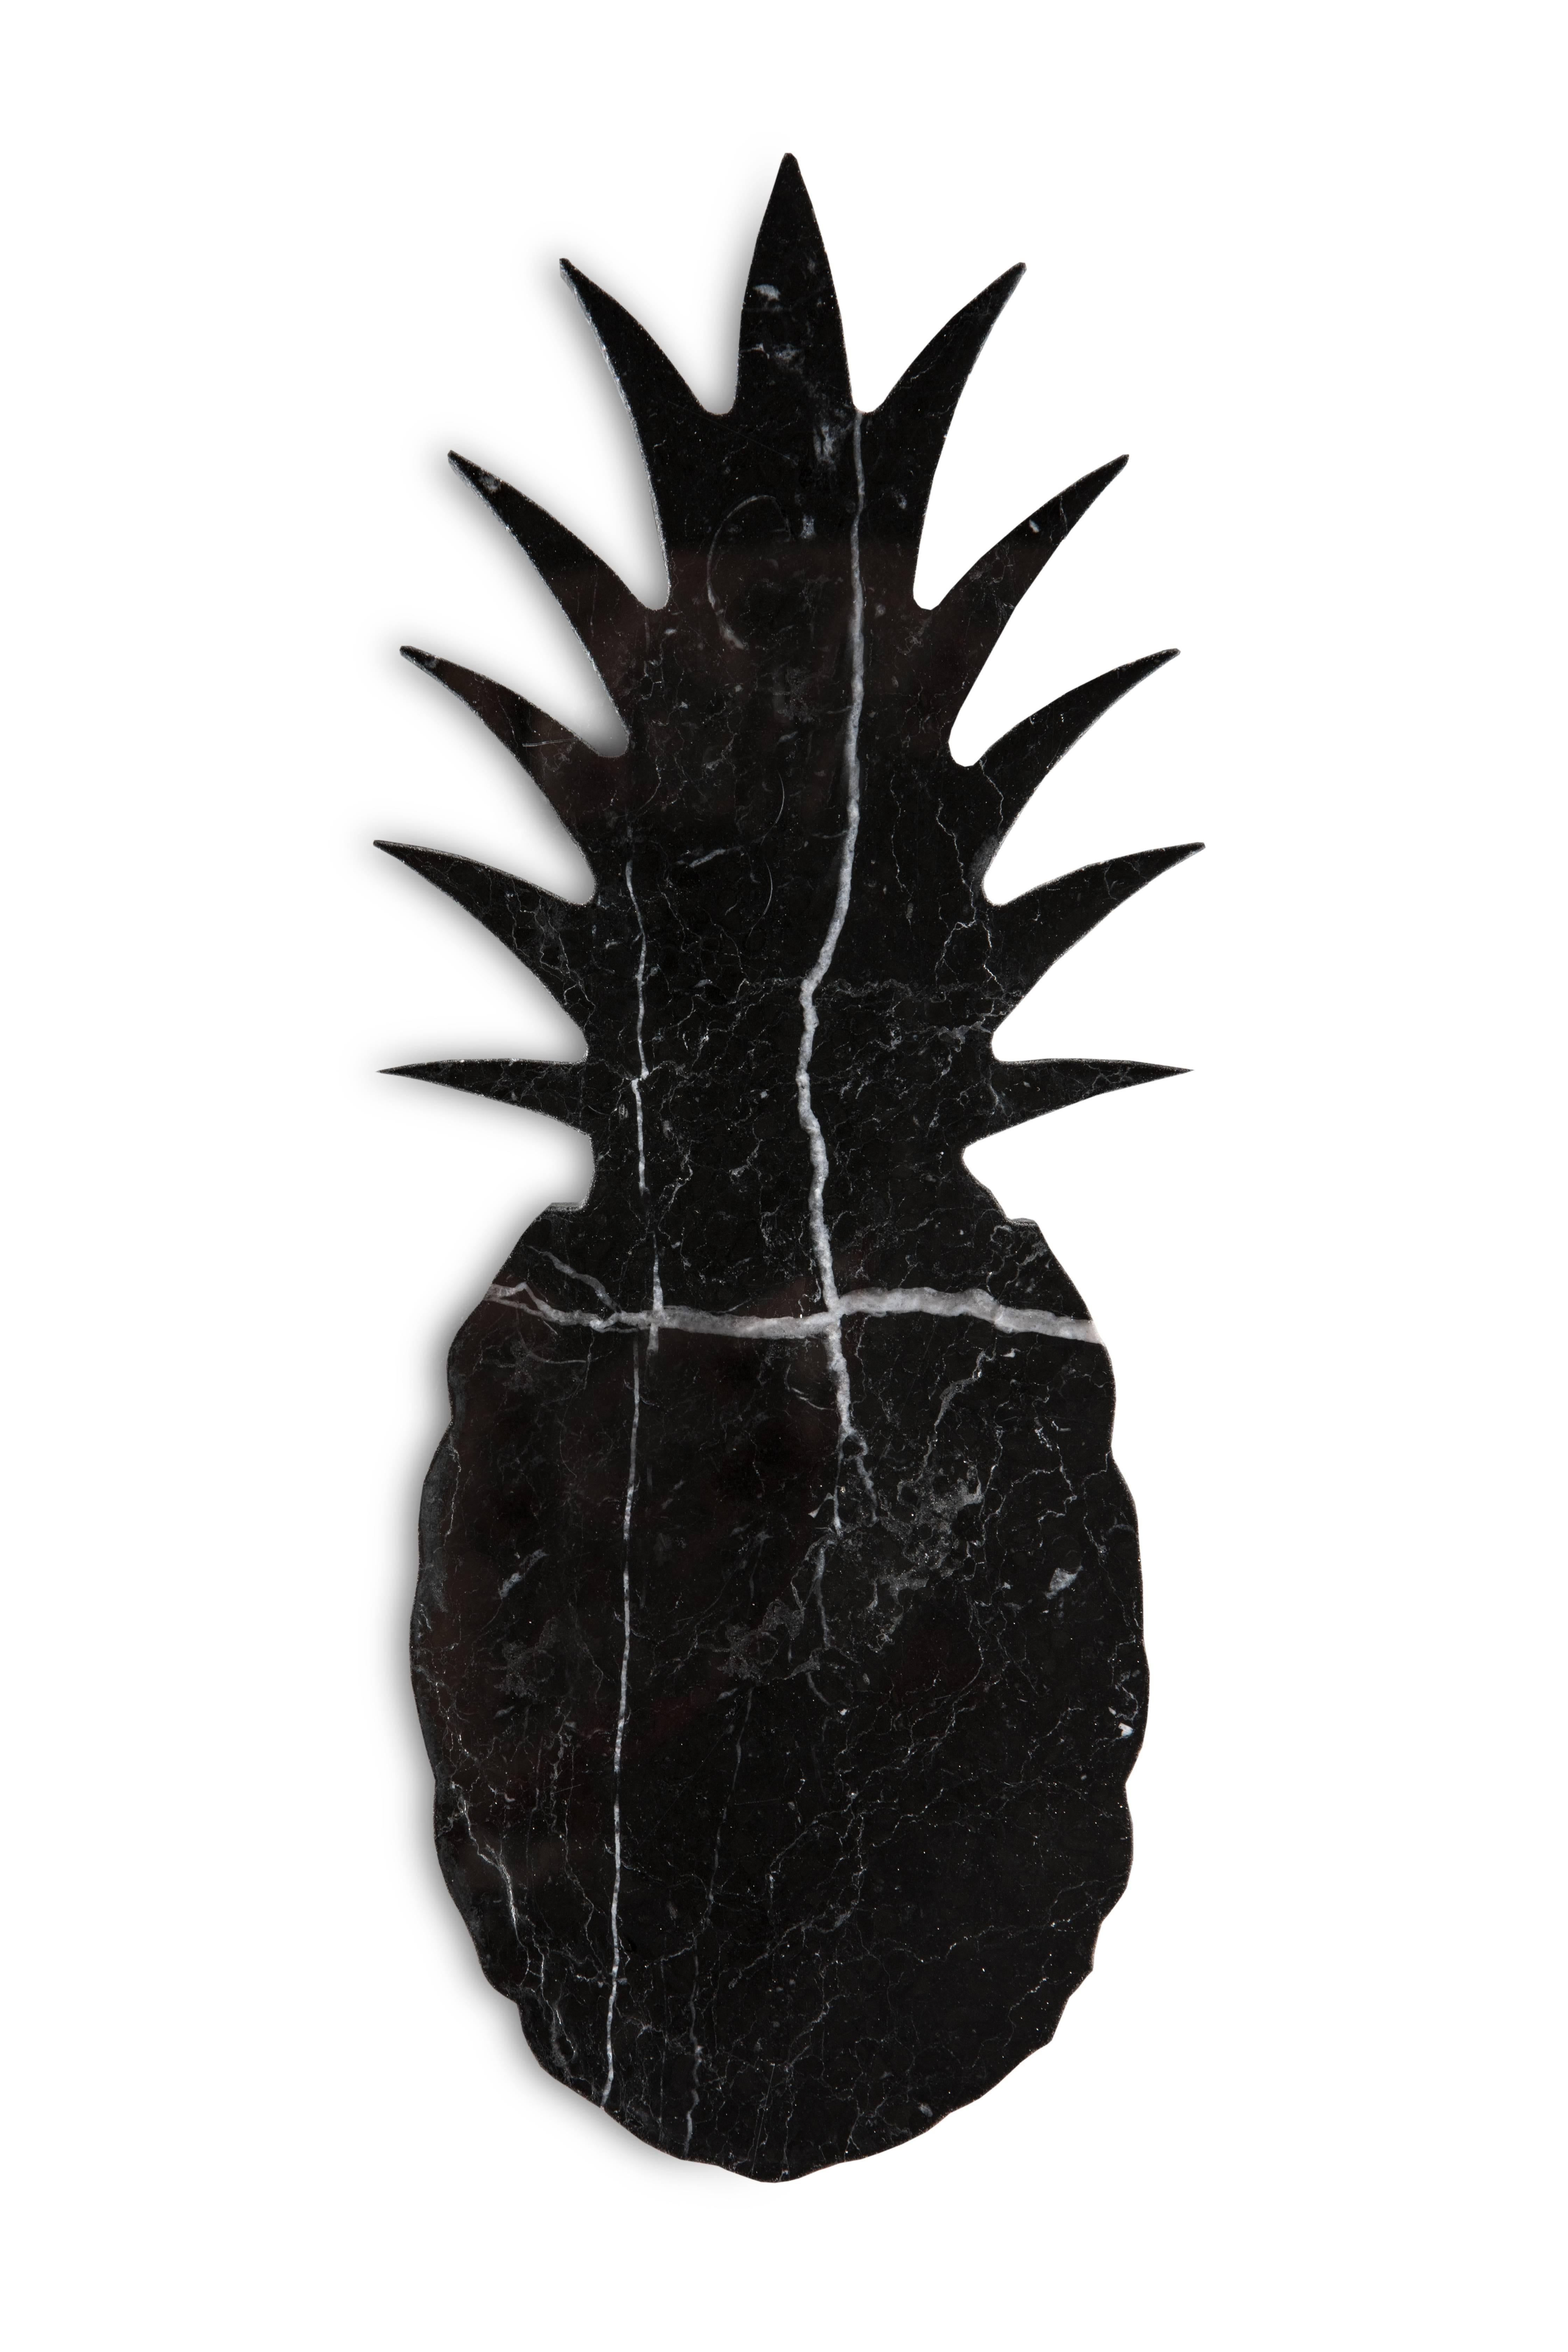 Kleiner Briefbeschwerer aus schwarzem Marquina-Marmor in Form einer Ananas. Jedes Stück ist ein Unikat (jeder Marmorblock hat eine andere Maserung und Schattierung) und wird von italienischen Handwerkern handgefertigt, die seit Generationen auf die